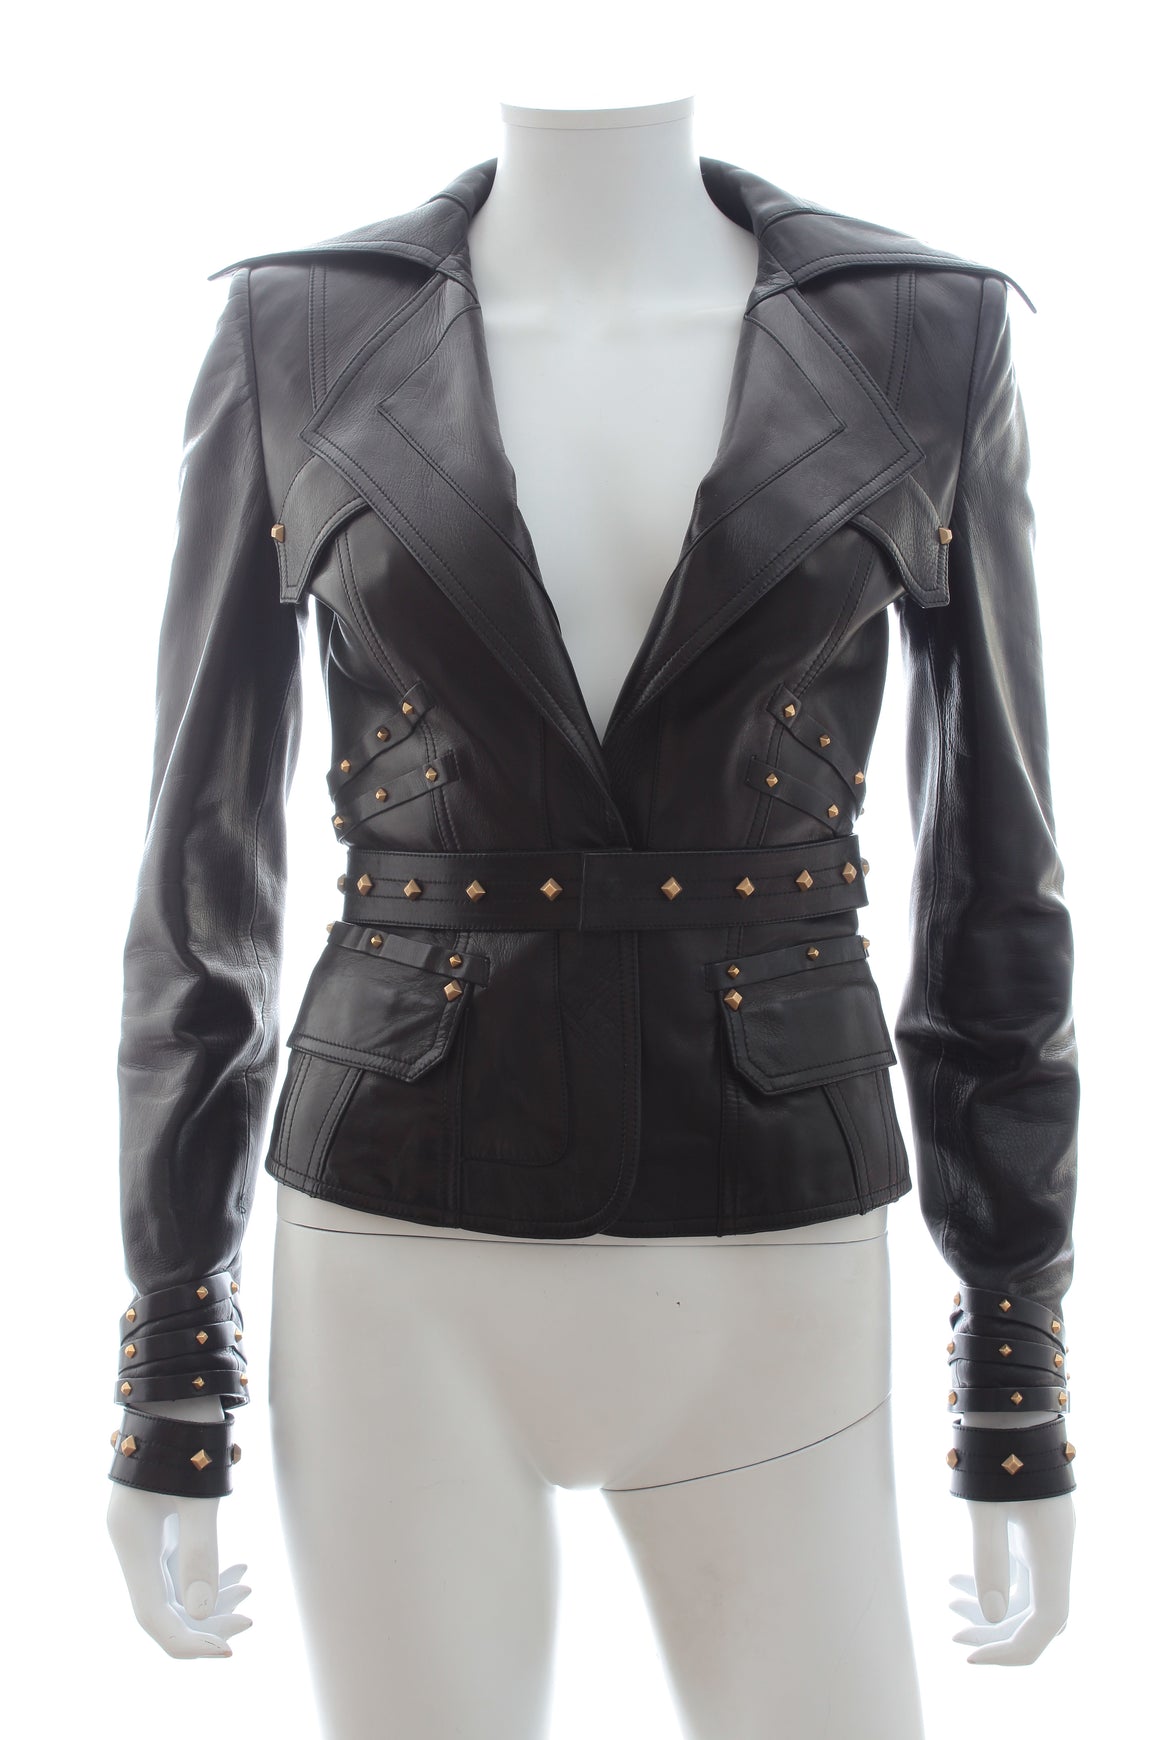 Gucci Stud Embellished Leather Jacket